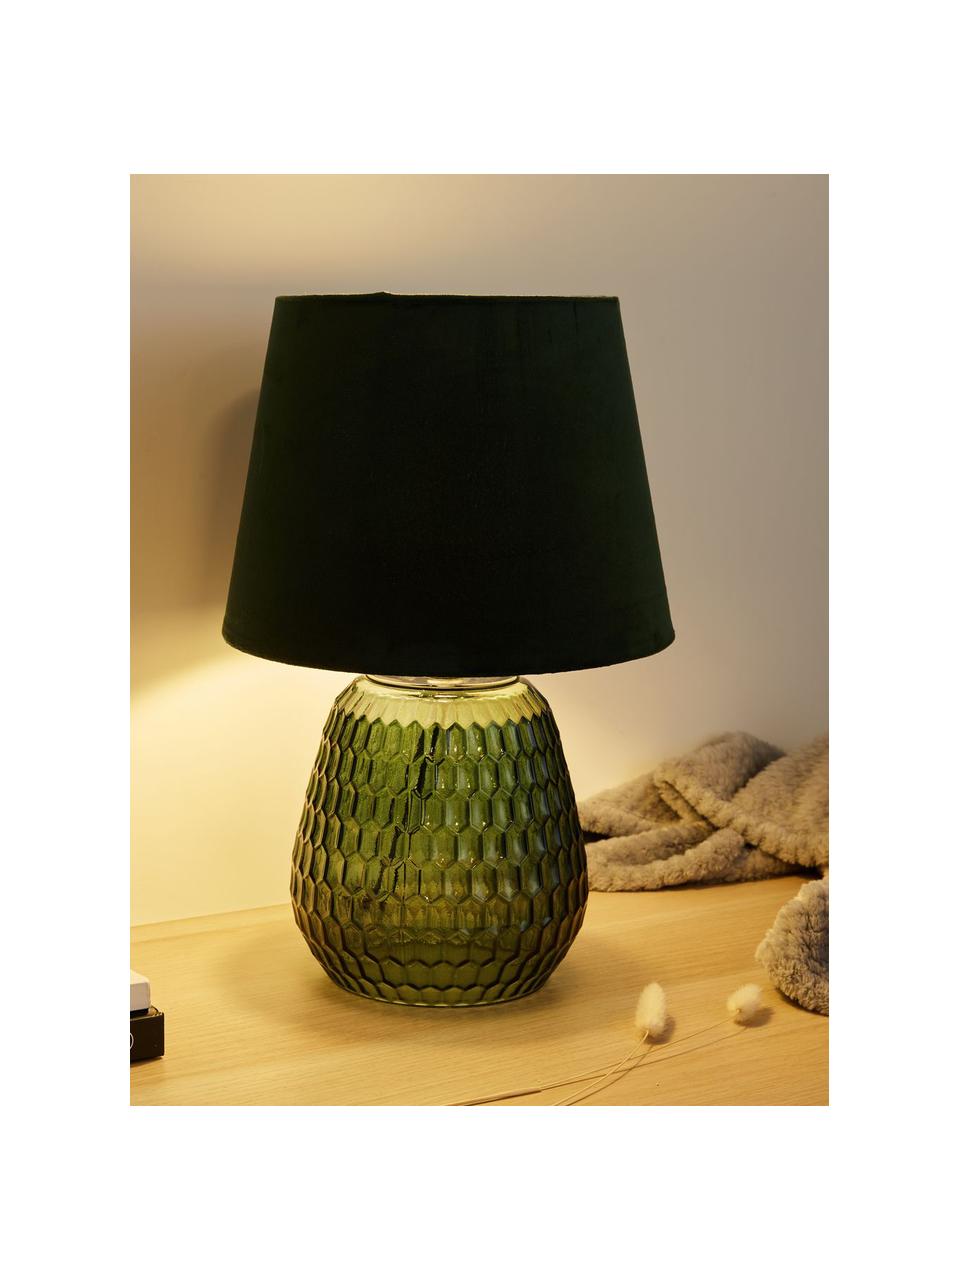 Tischlampe Crystal Velours mit Glasfuß, Lampenschirm: Samt, Lampenfuß: Glas, Grün, Ø 25 x H 37 cm